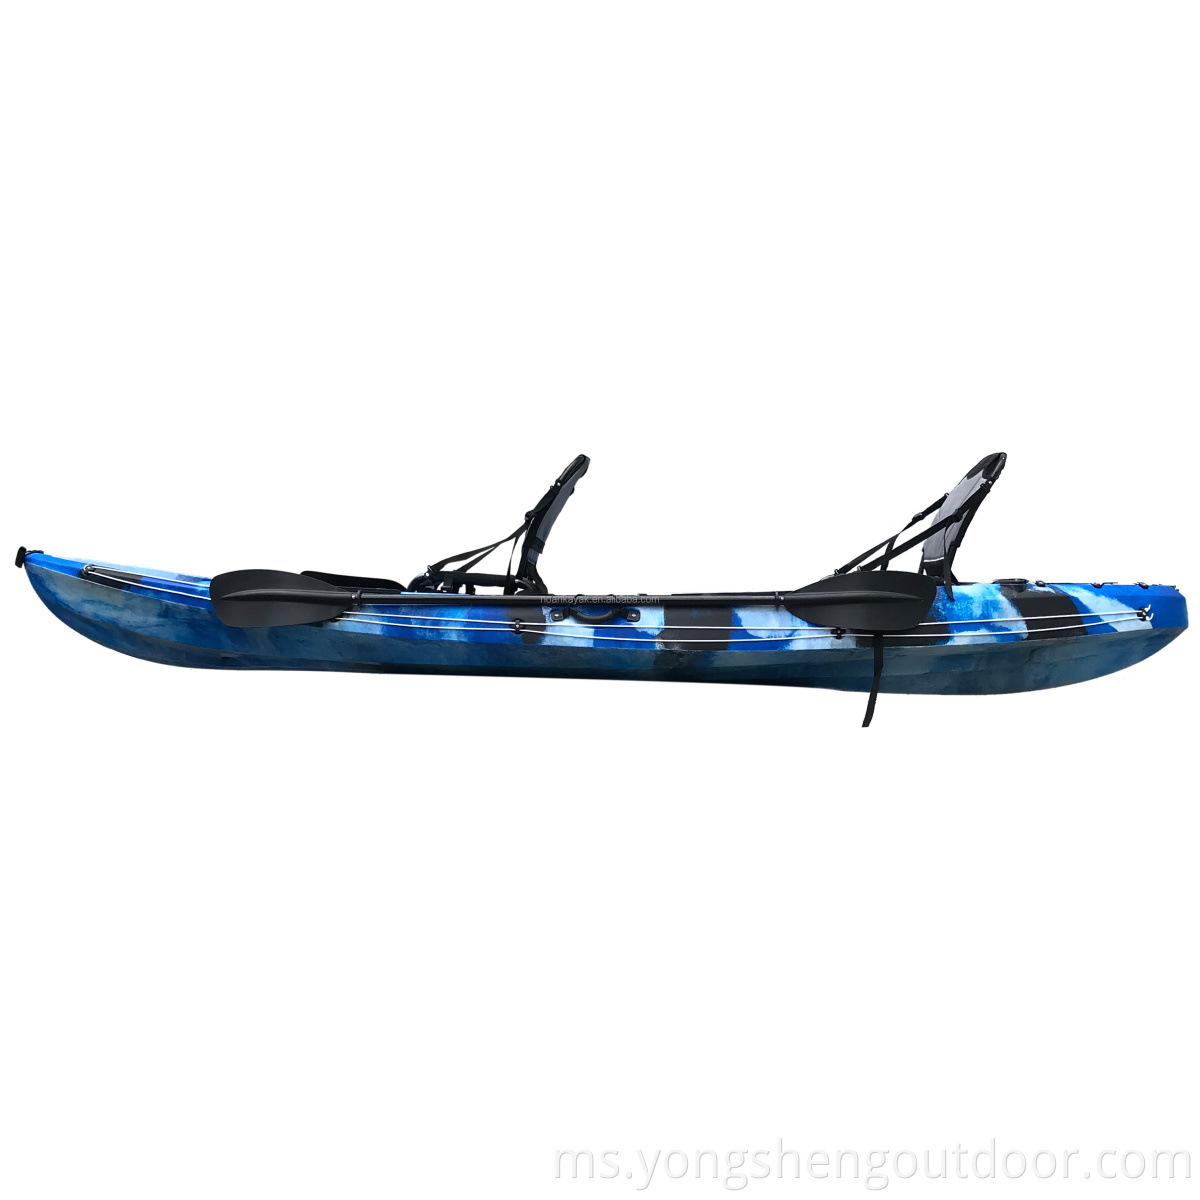 Kayak memancing berganda duduk di atas kayak